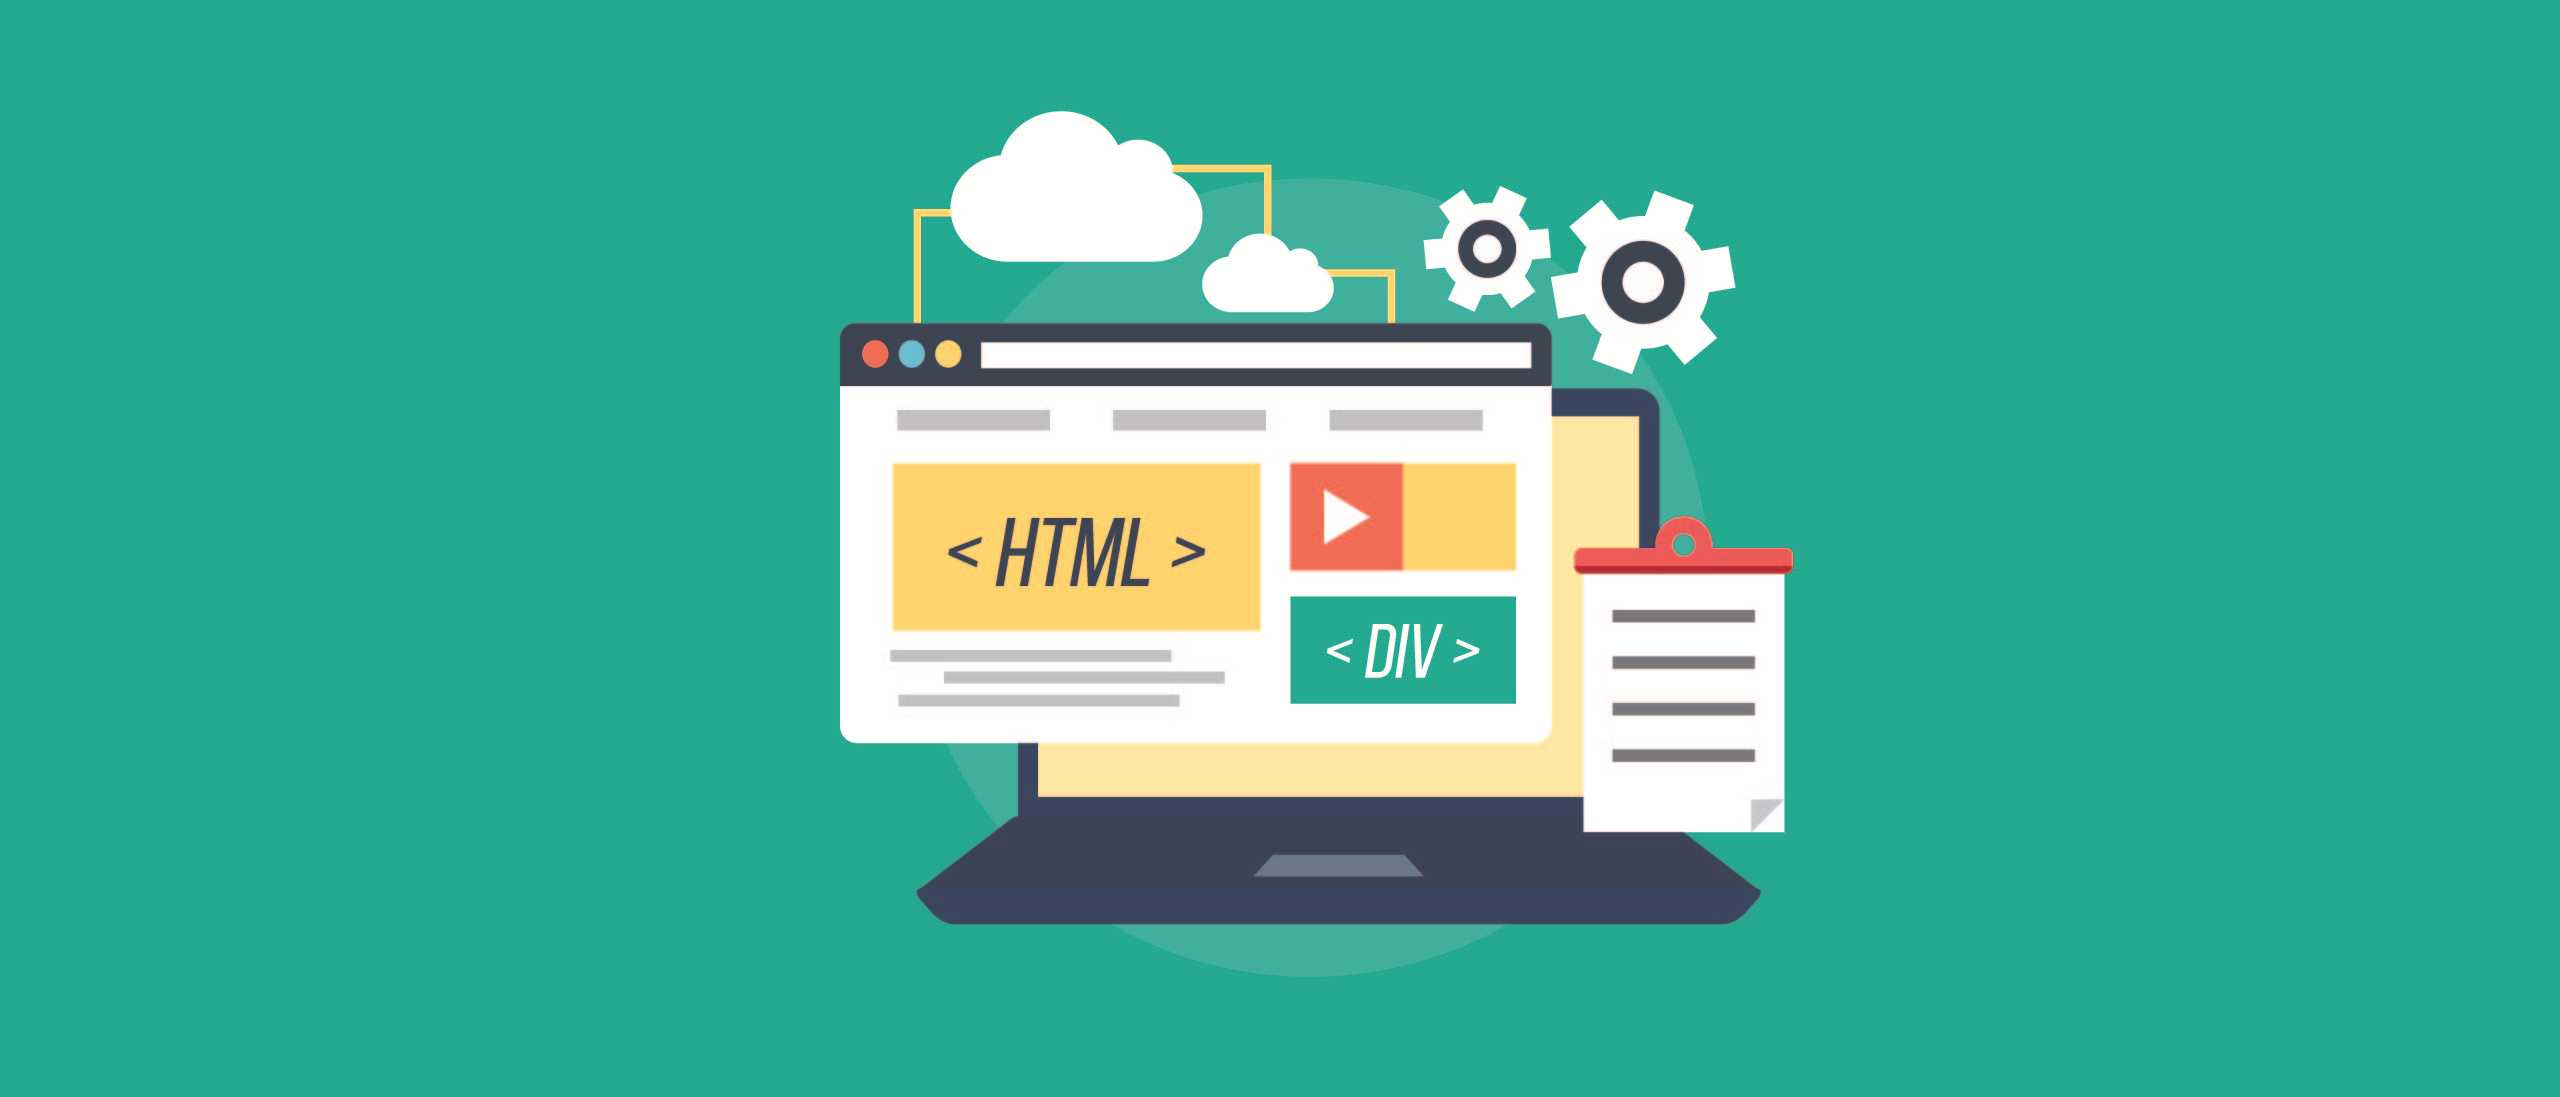 Học HTML/CSS cơ bản qua bài tập thực tế